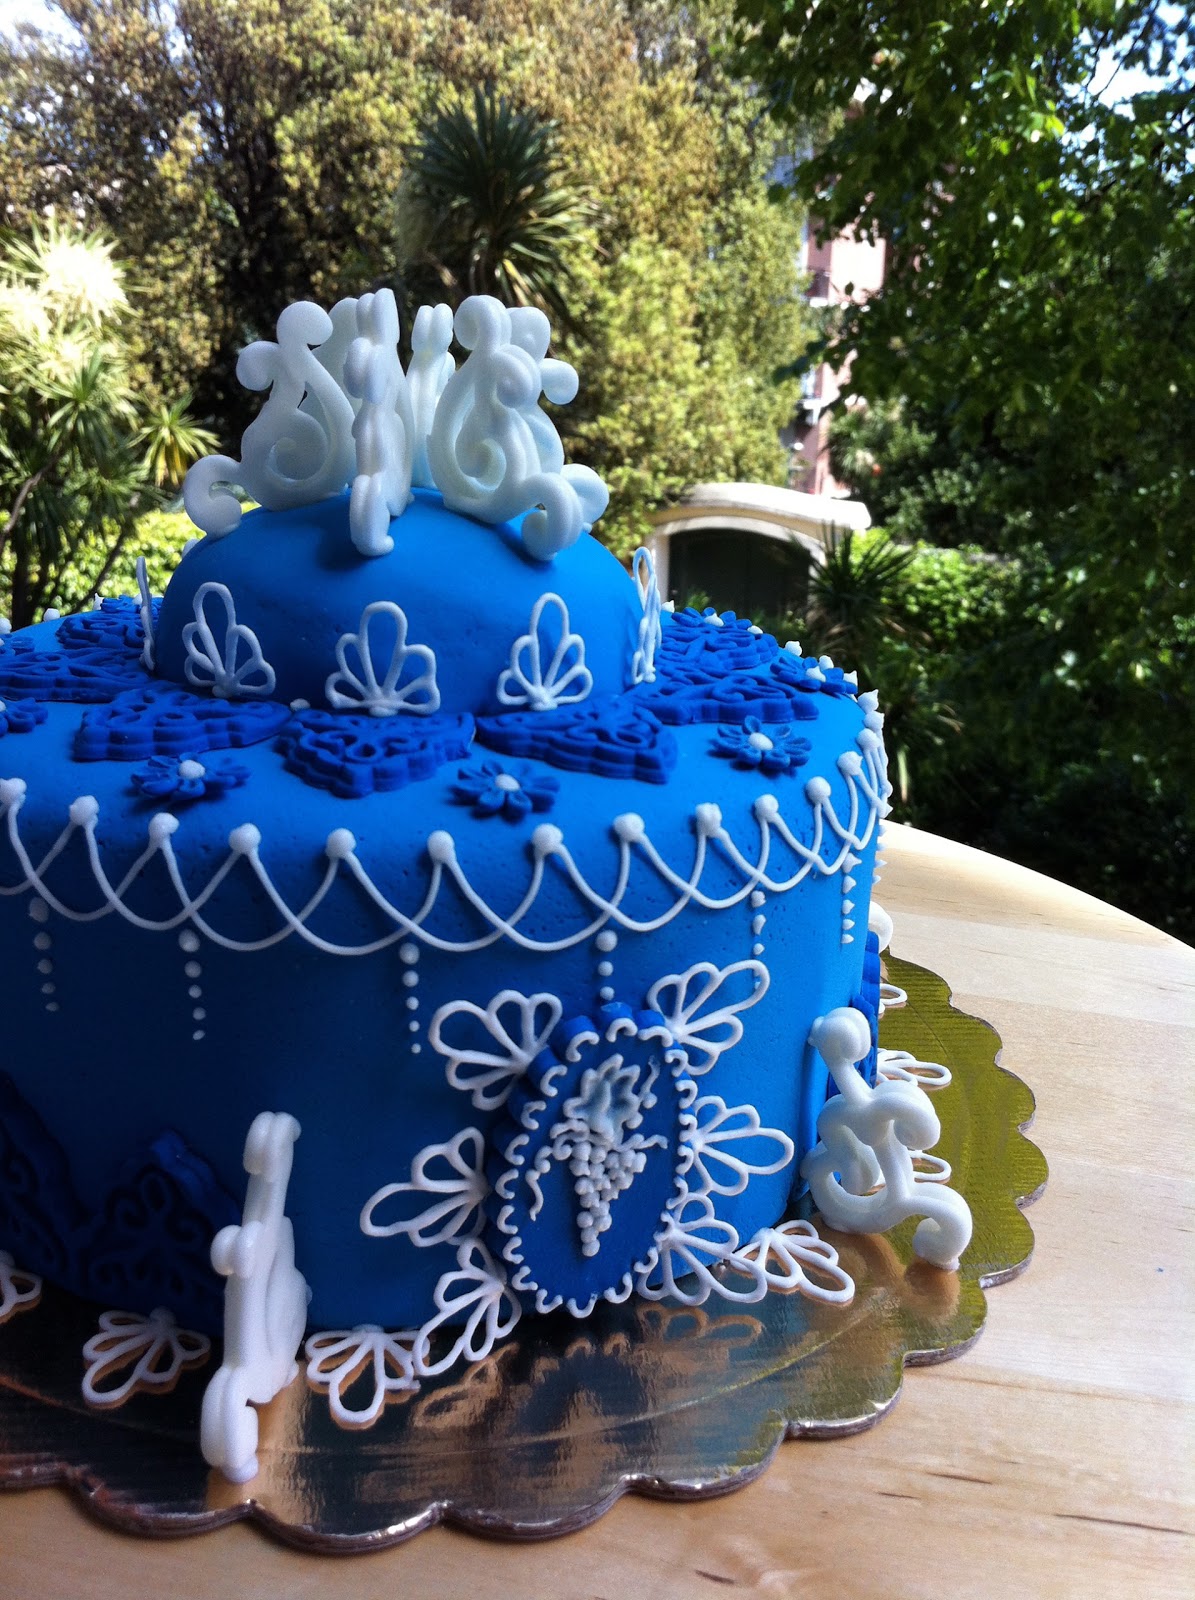 Come decorare una torta: la moda del Cake Design